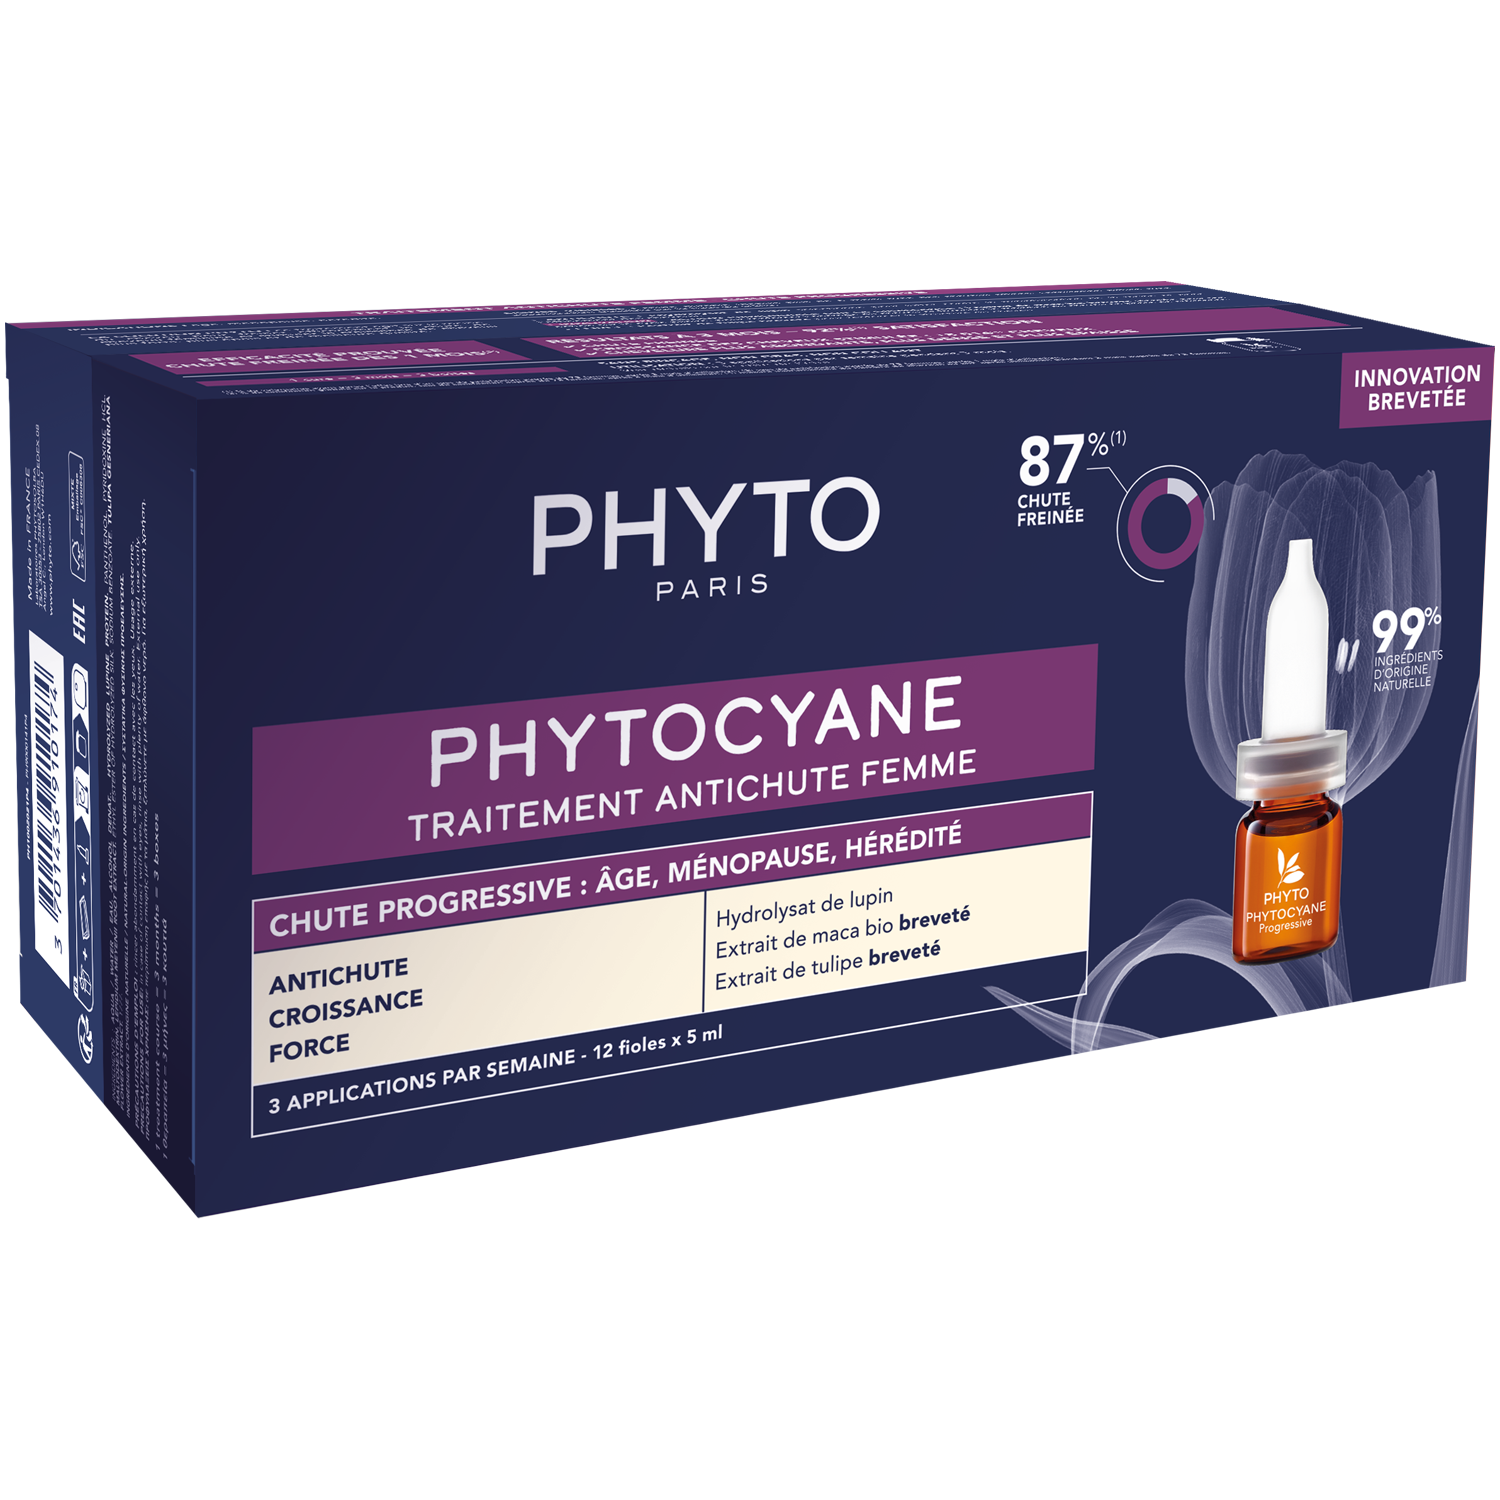 Phyto Phytocyane средство против выпадения волос для женщин, 60 мл phyto сыворотка против выпадения волос для мужчин 12 флаконов х 3 5 мл phyto phytocyane